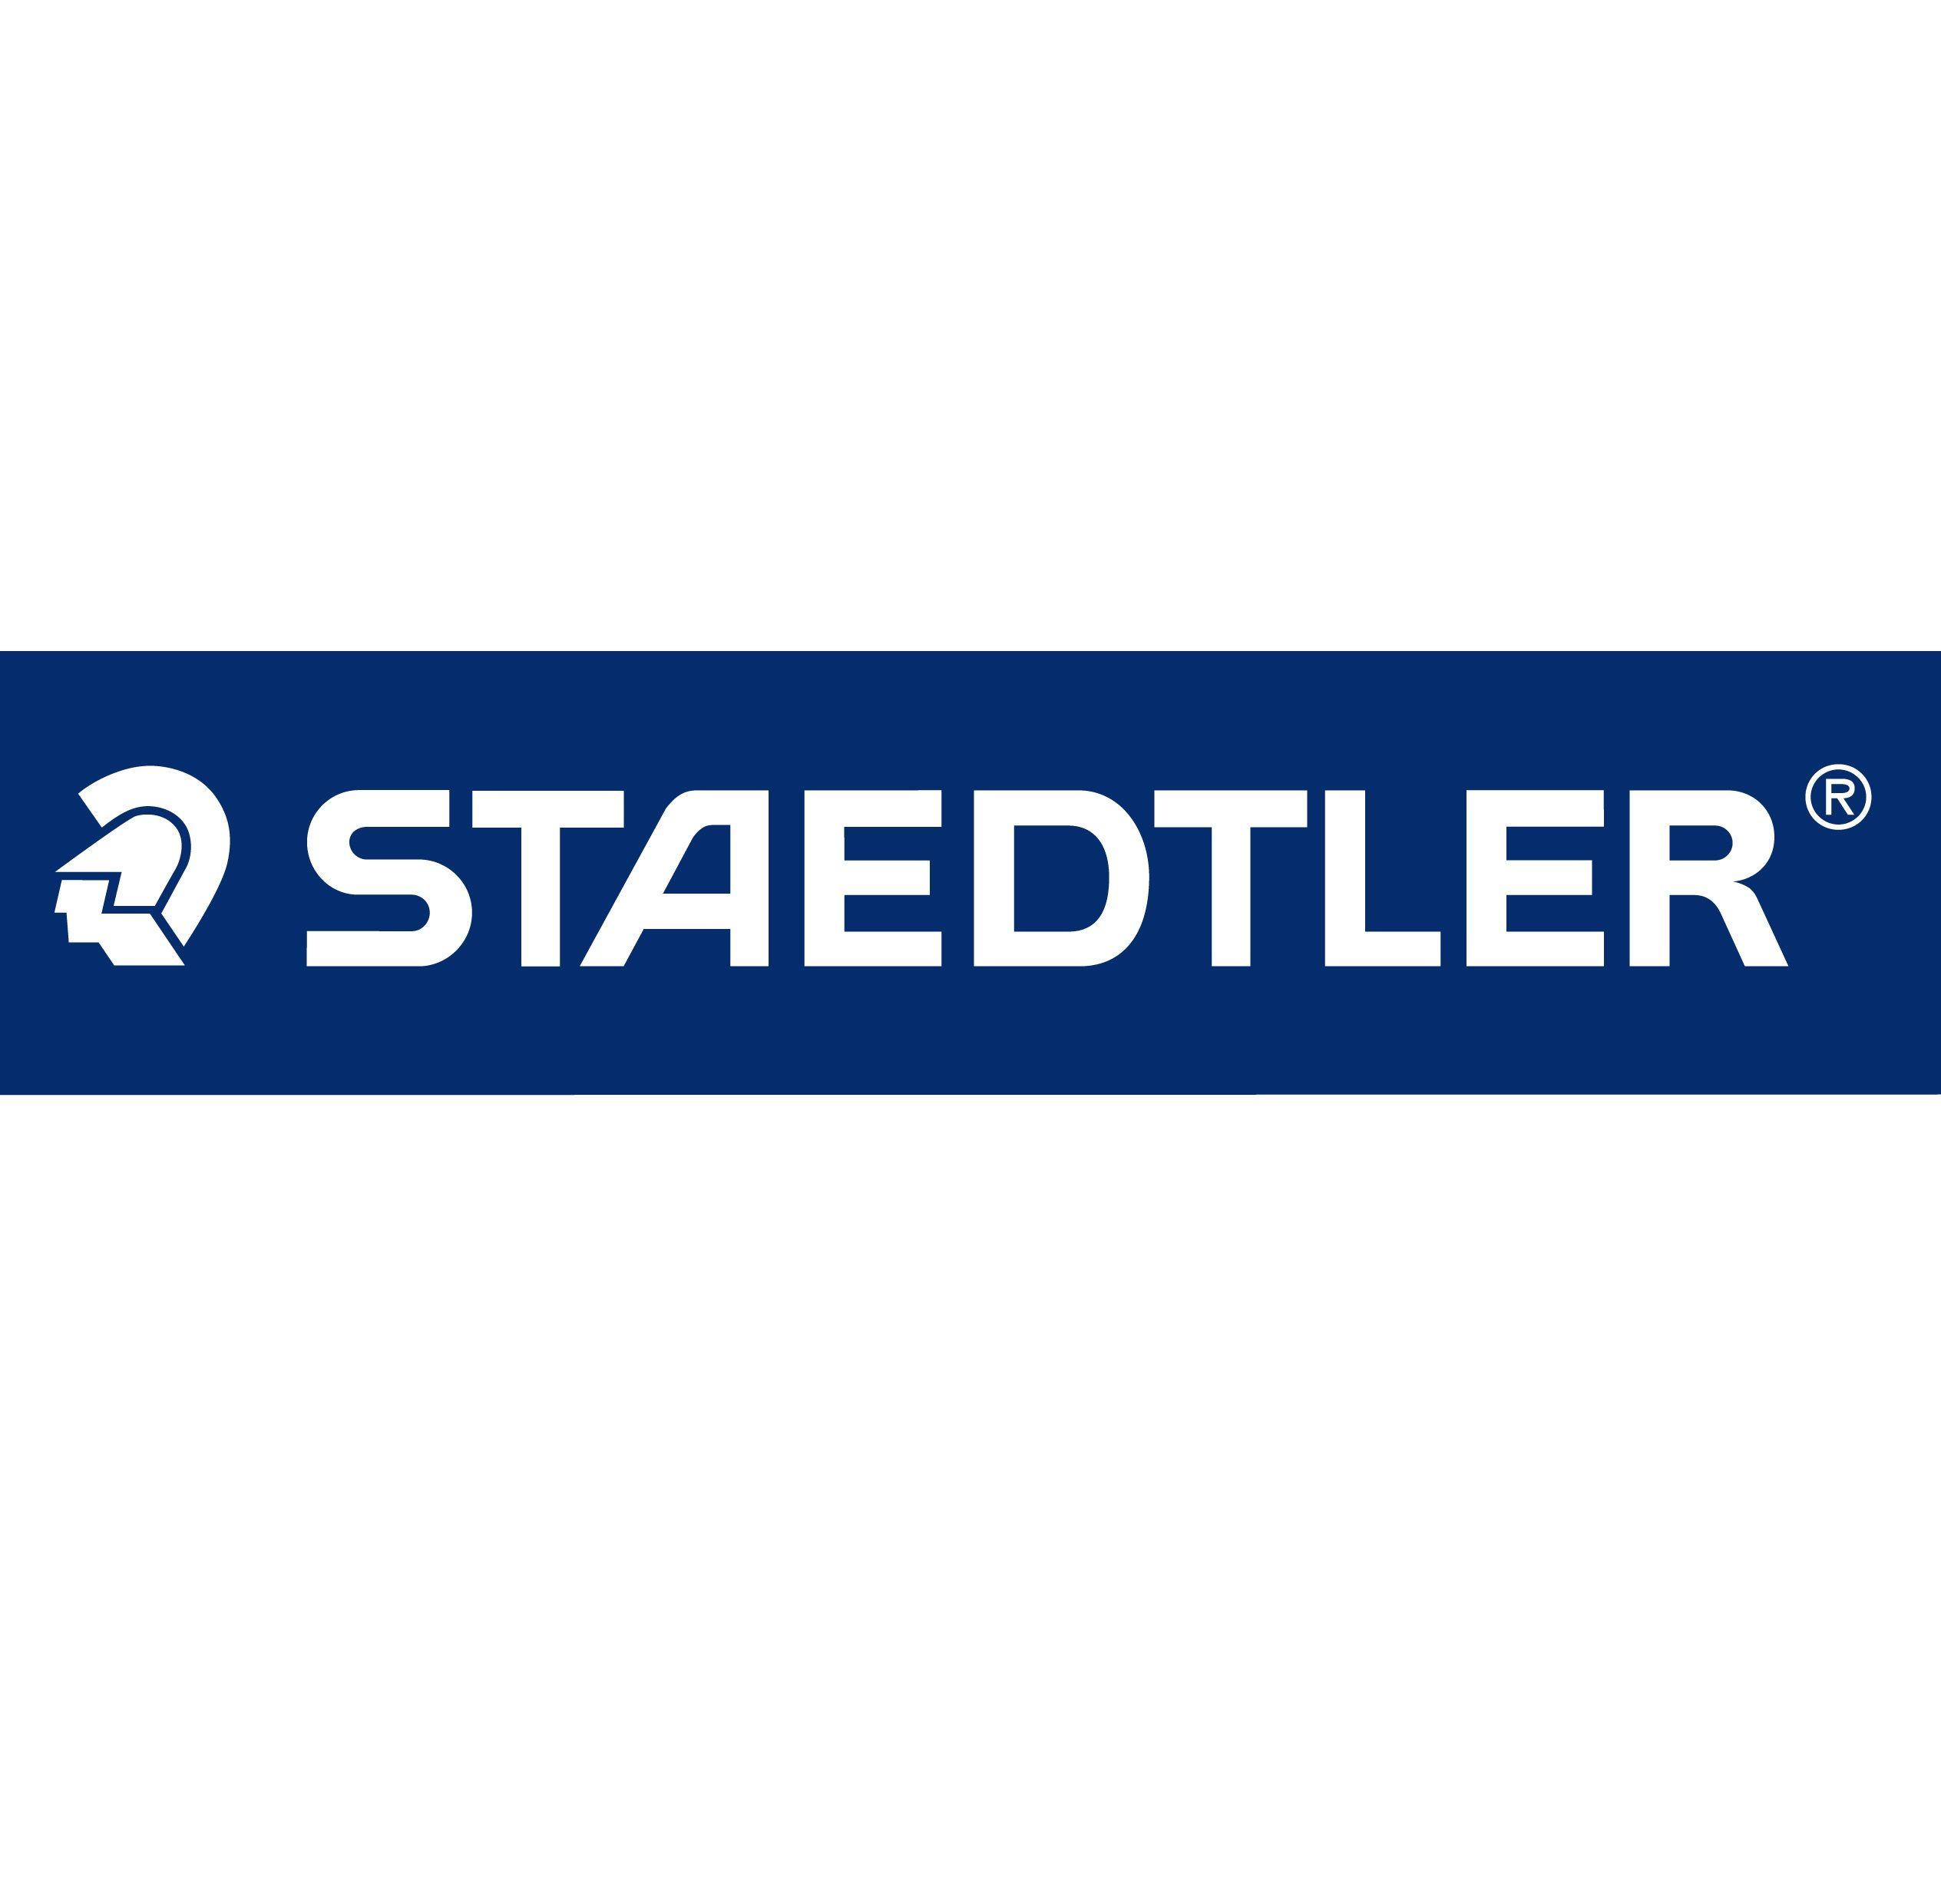 Staedtler Logo - STAEDTLER' logo Its 